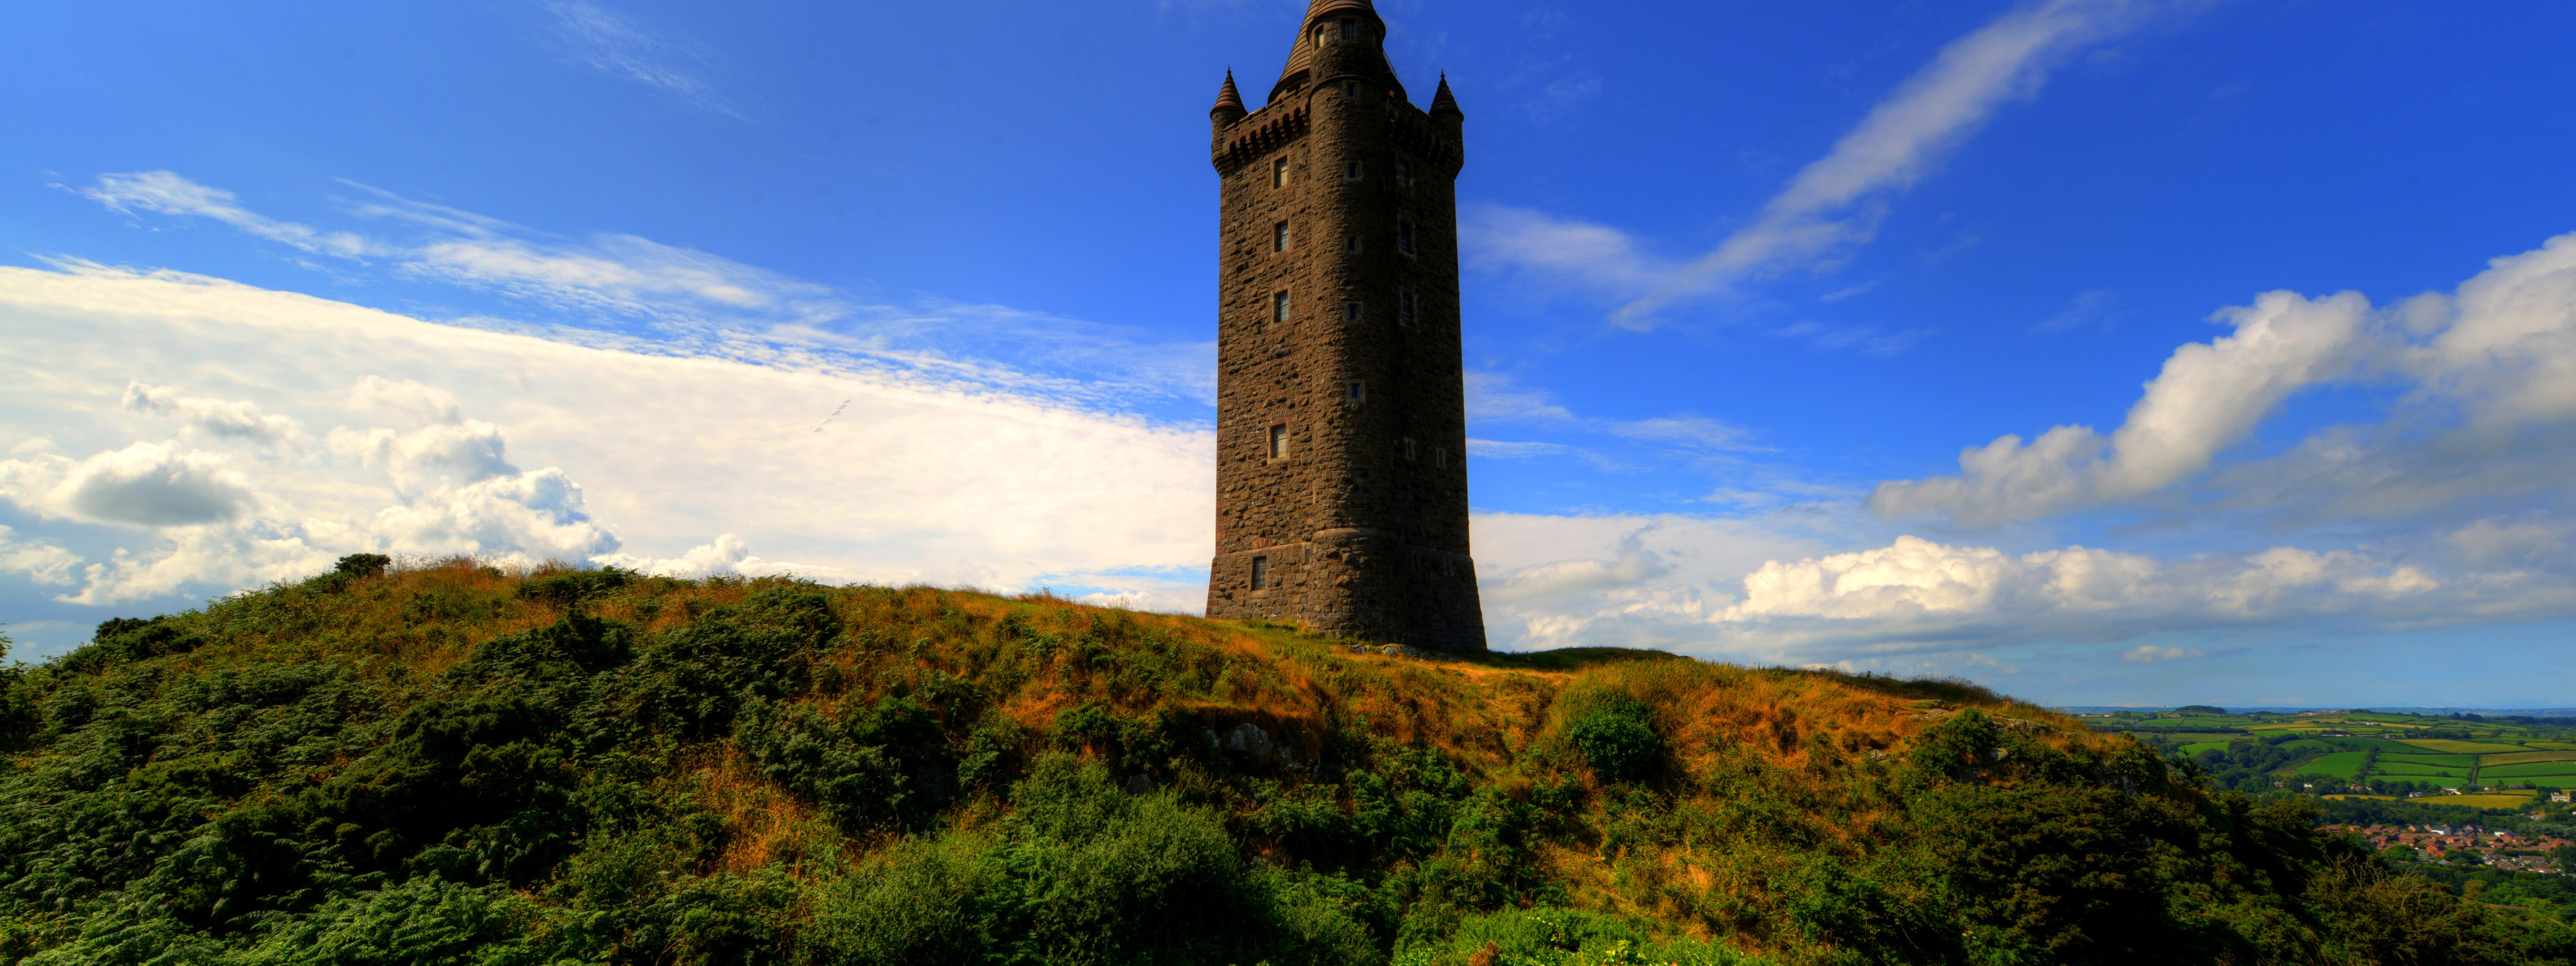 Башня на холме. Башня скрабо, Ирландия. Толкишская башня. Башня в поле.